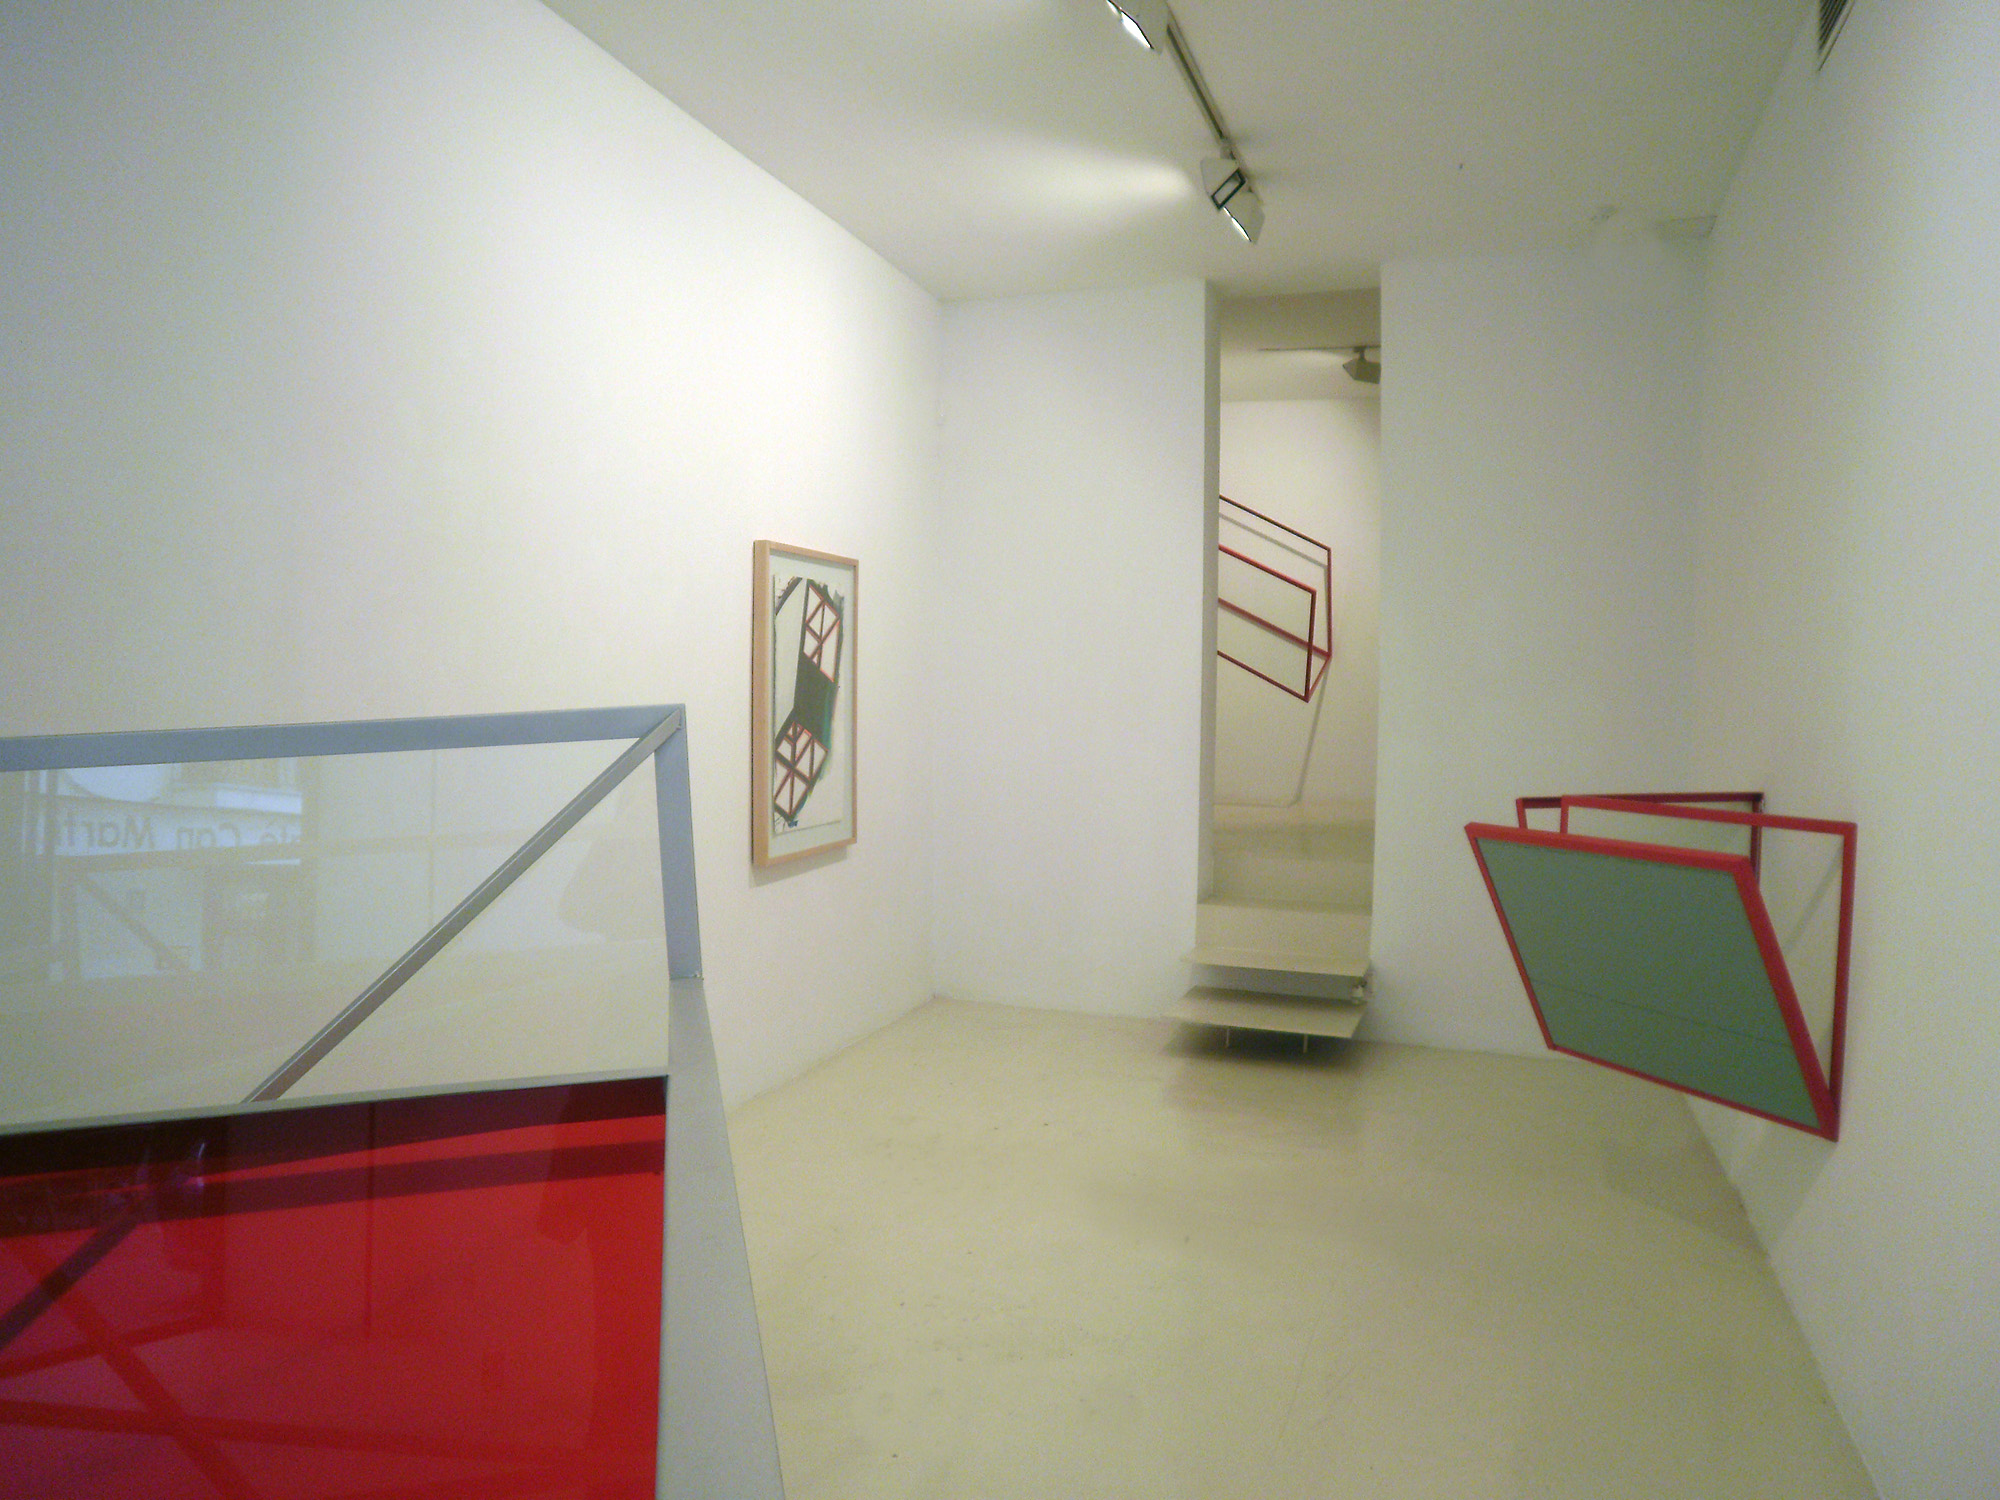 Vista de la exposición de Jose Pedro Croft, 2010